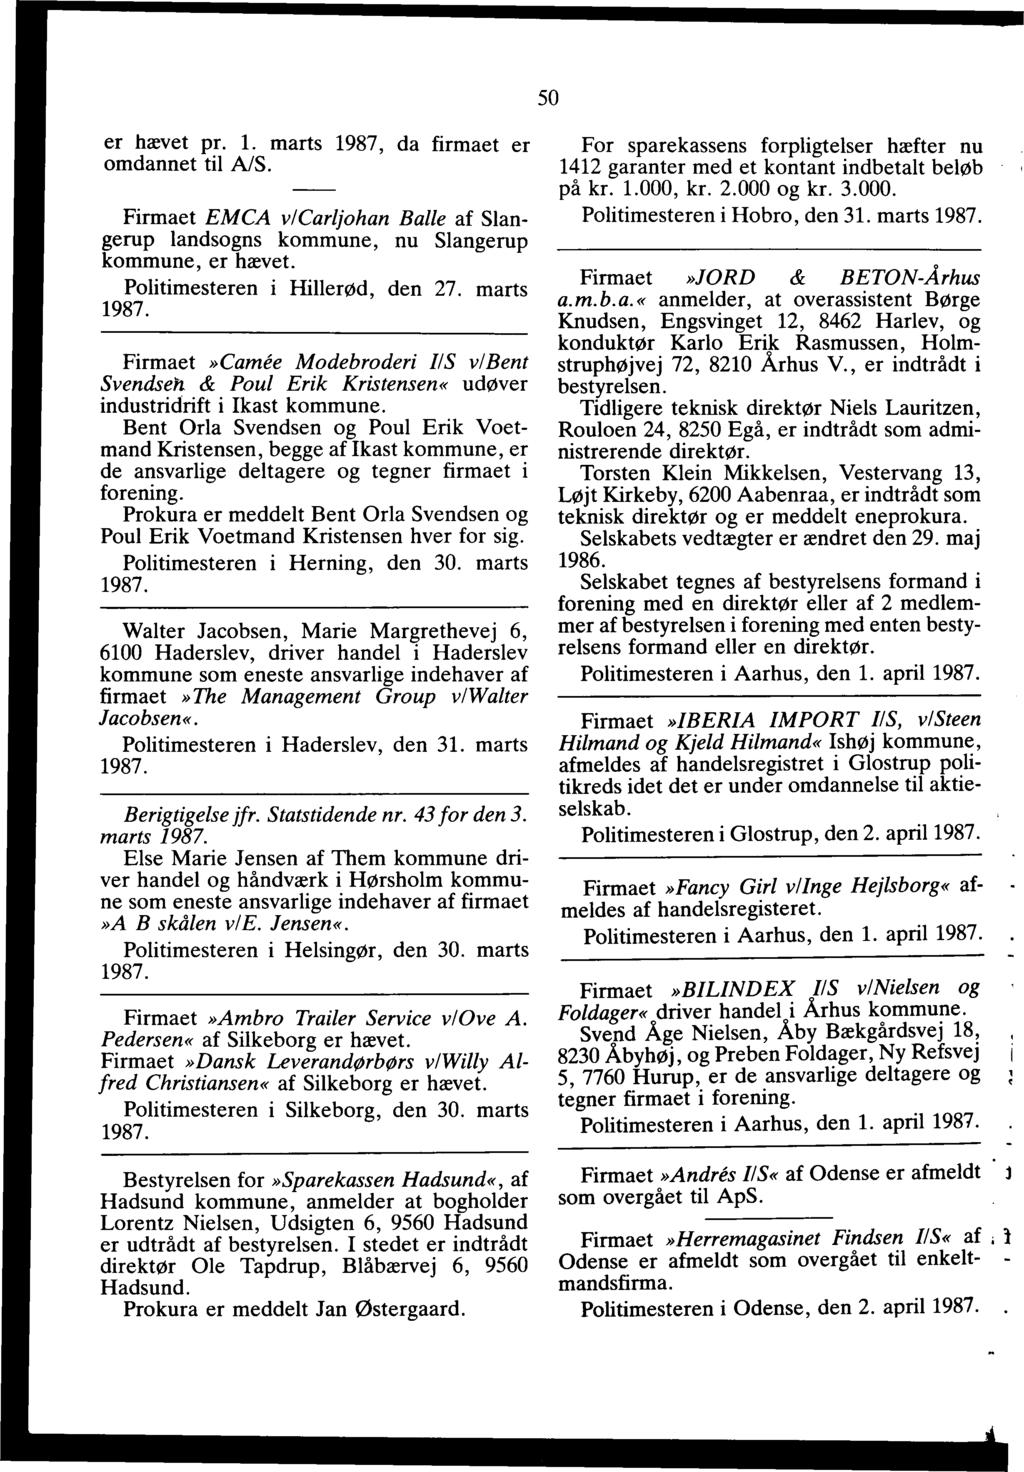 1987 Anmeldelser, bekendtgjort i Statstidende i januar måned r. 1 - PDF Gratis download